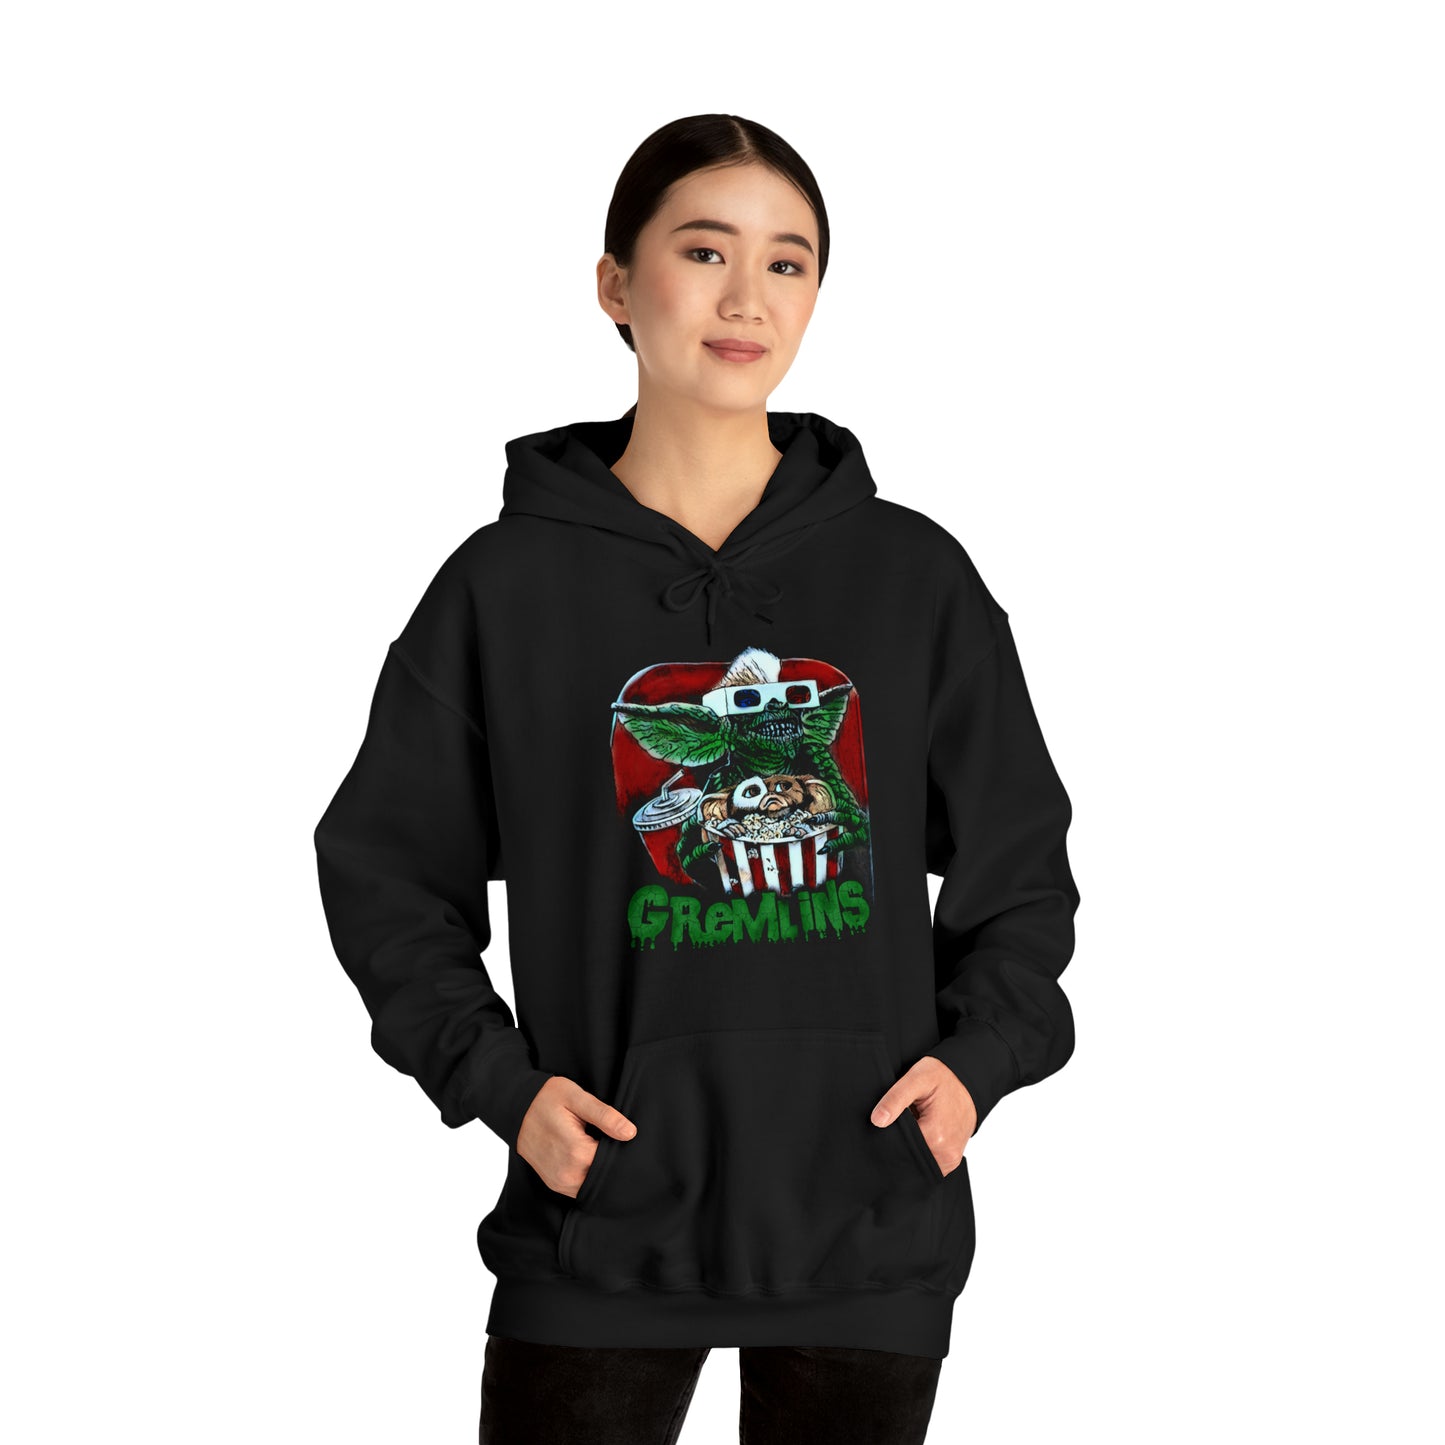 Gremlins Hooded Sweatshirt